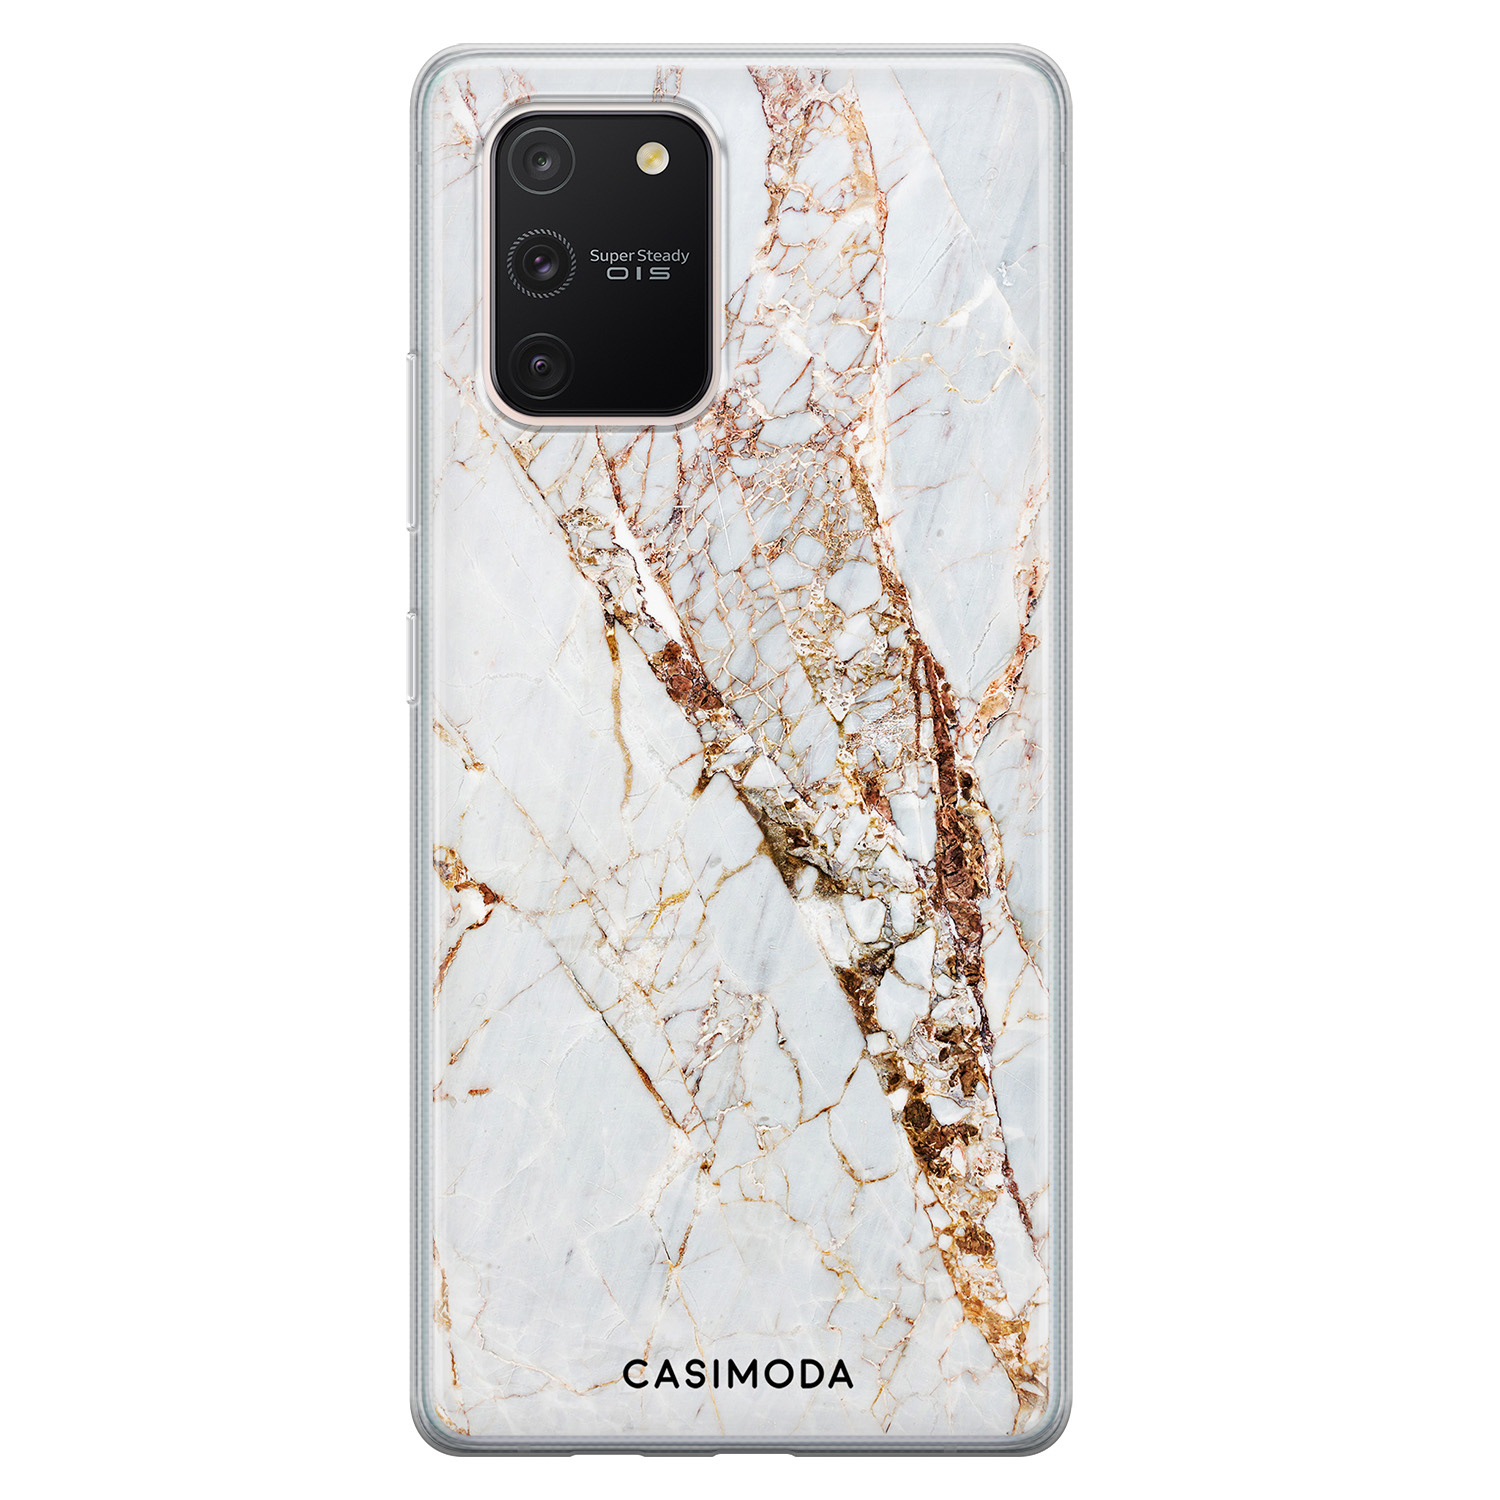 Fractie hun Het beste Samsung Galaxy S10 Lite siliconen hoesje - Marmer goud - Casimoda.nl